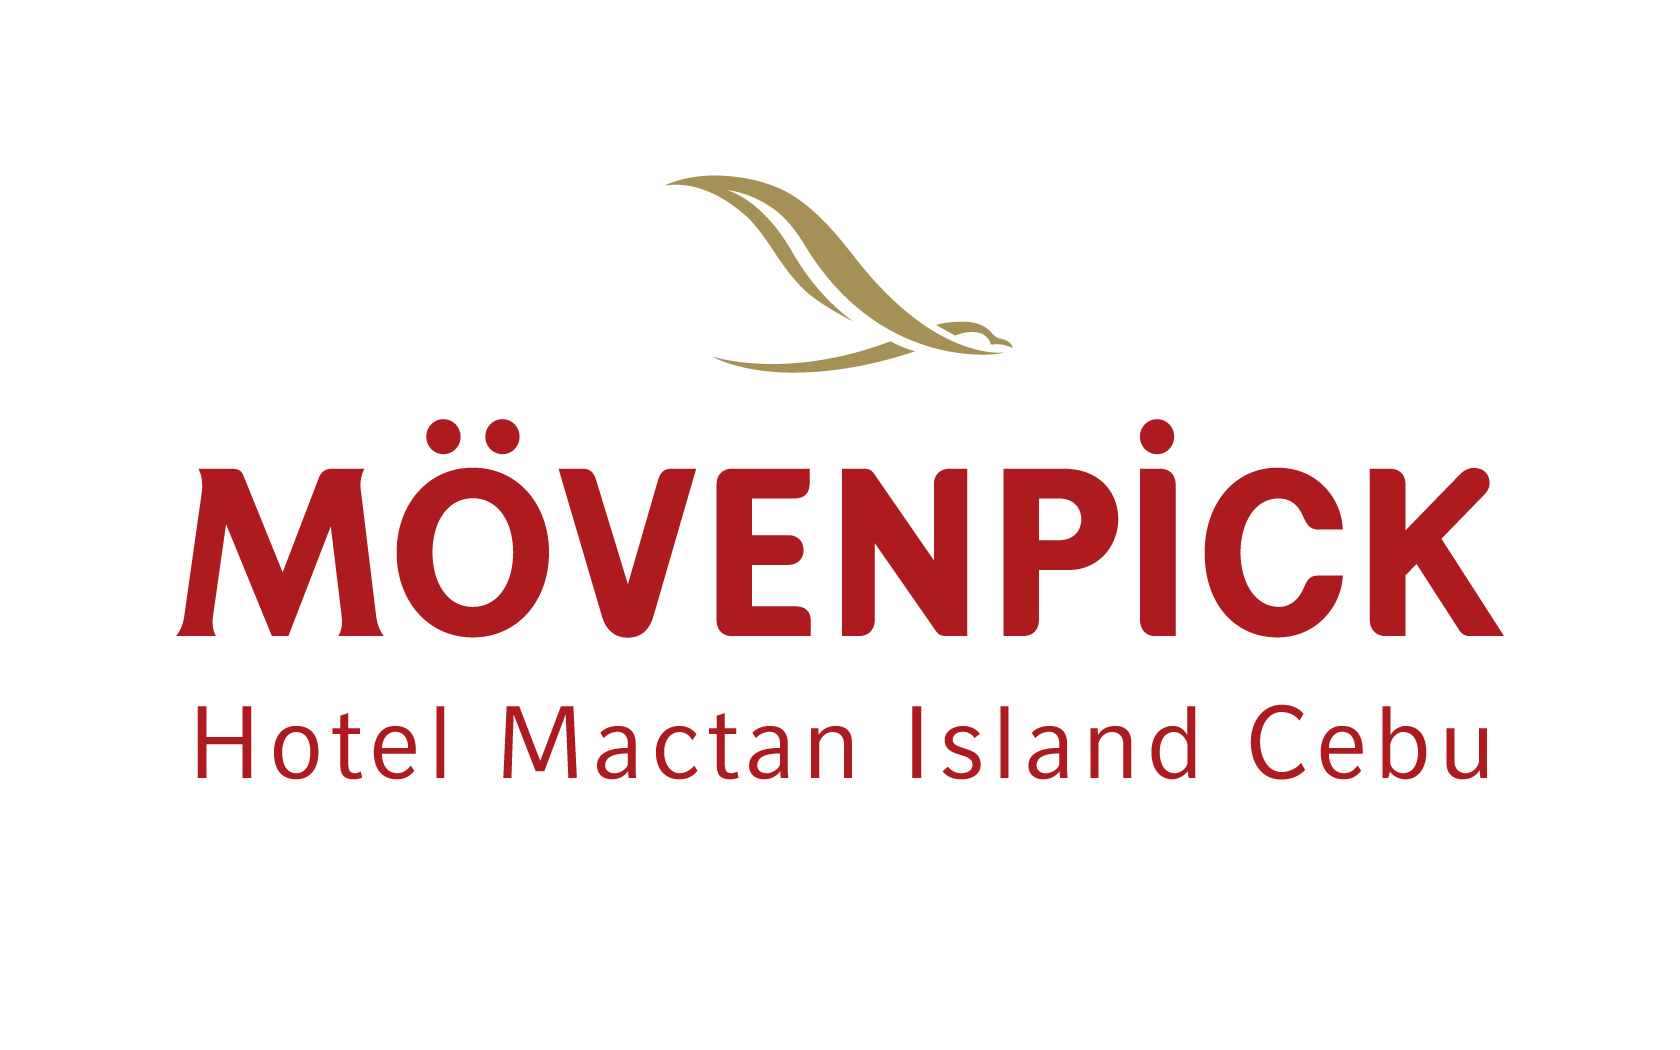 Job hiring at Movenpick Hotel Mactan Island Cebu, Job vacancy in Movenpick Hotel Mactan Island Cebu